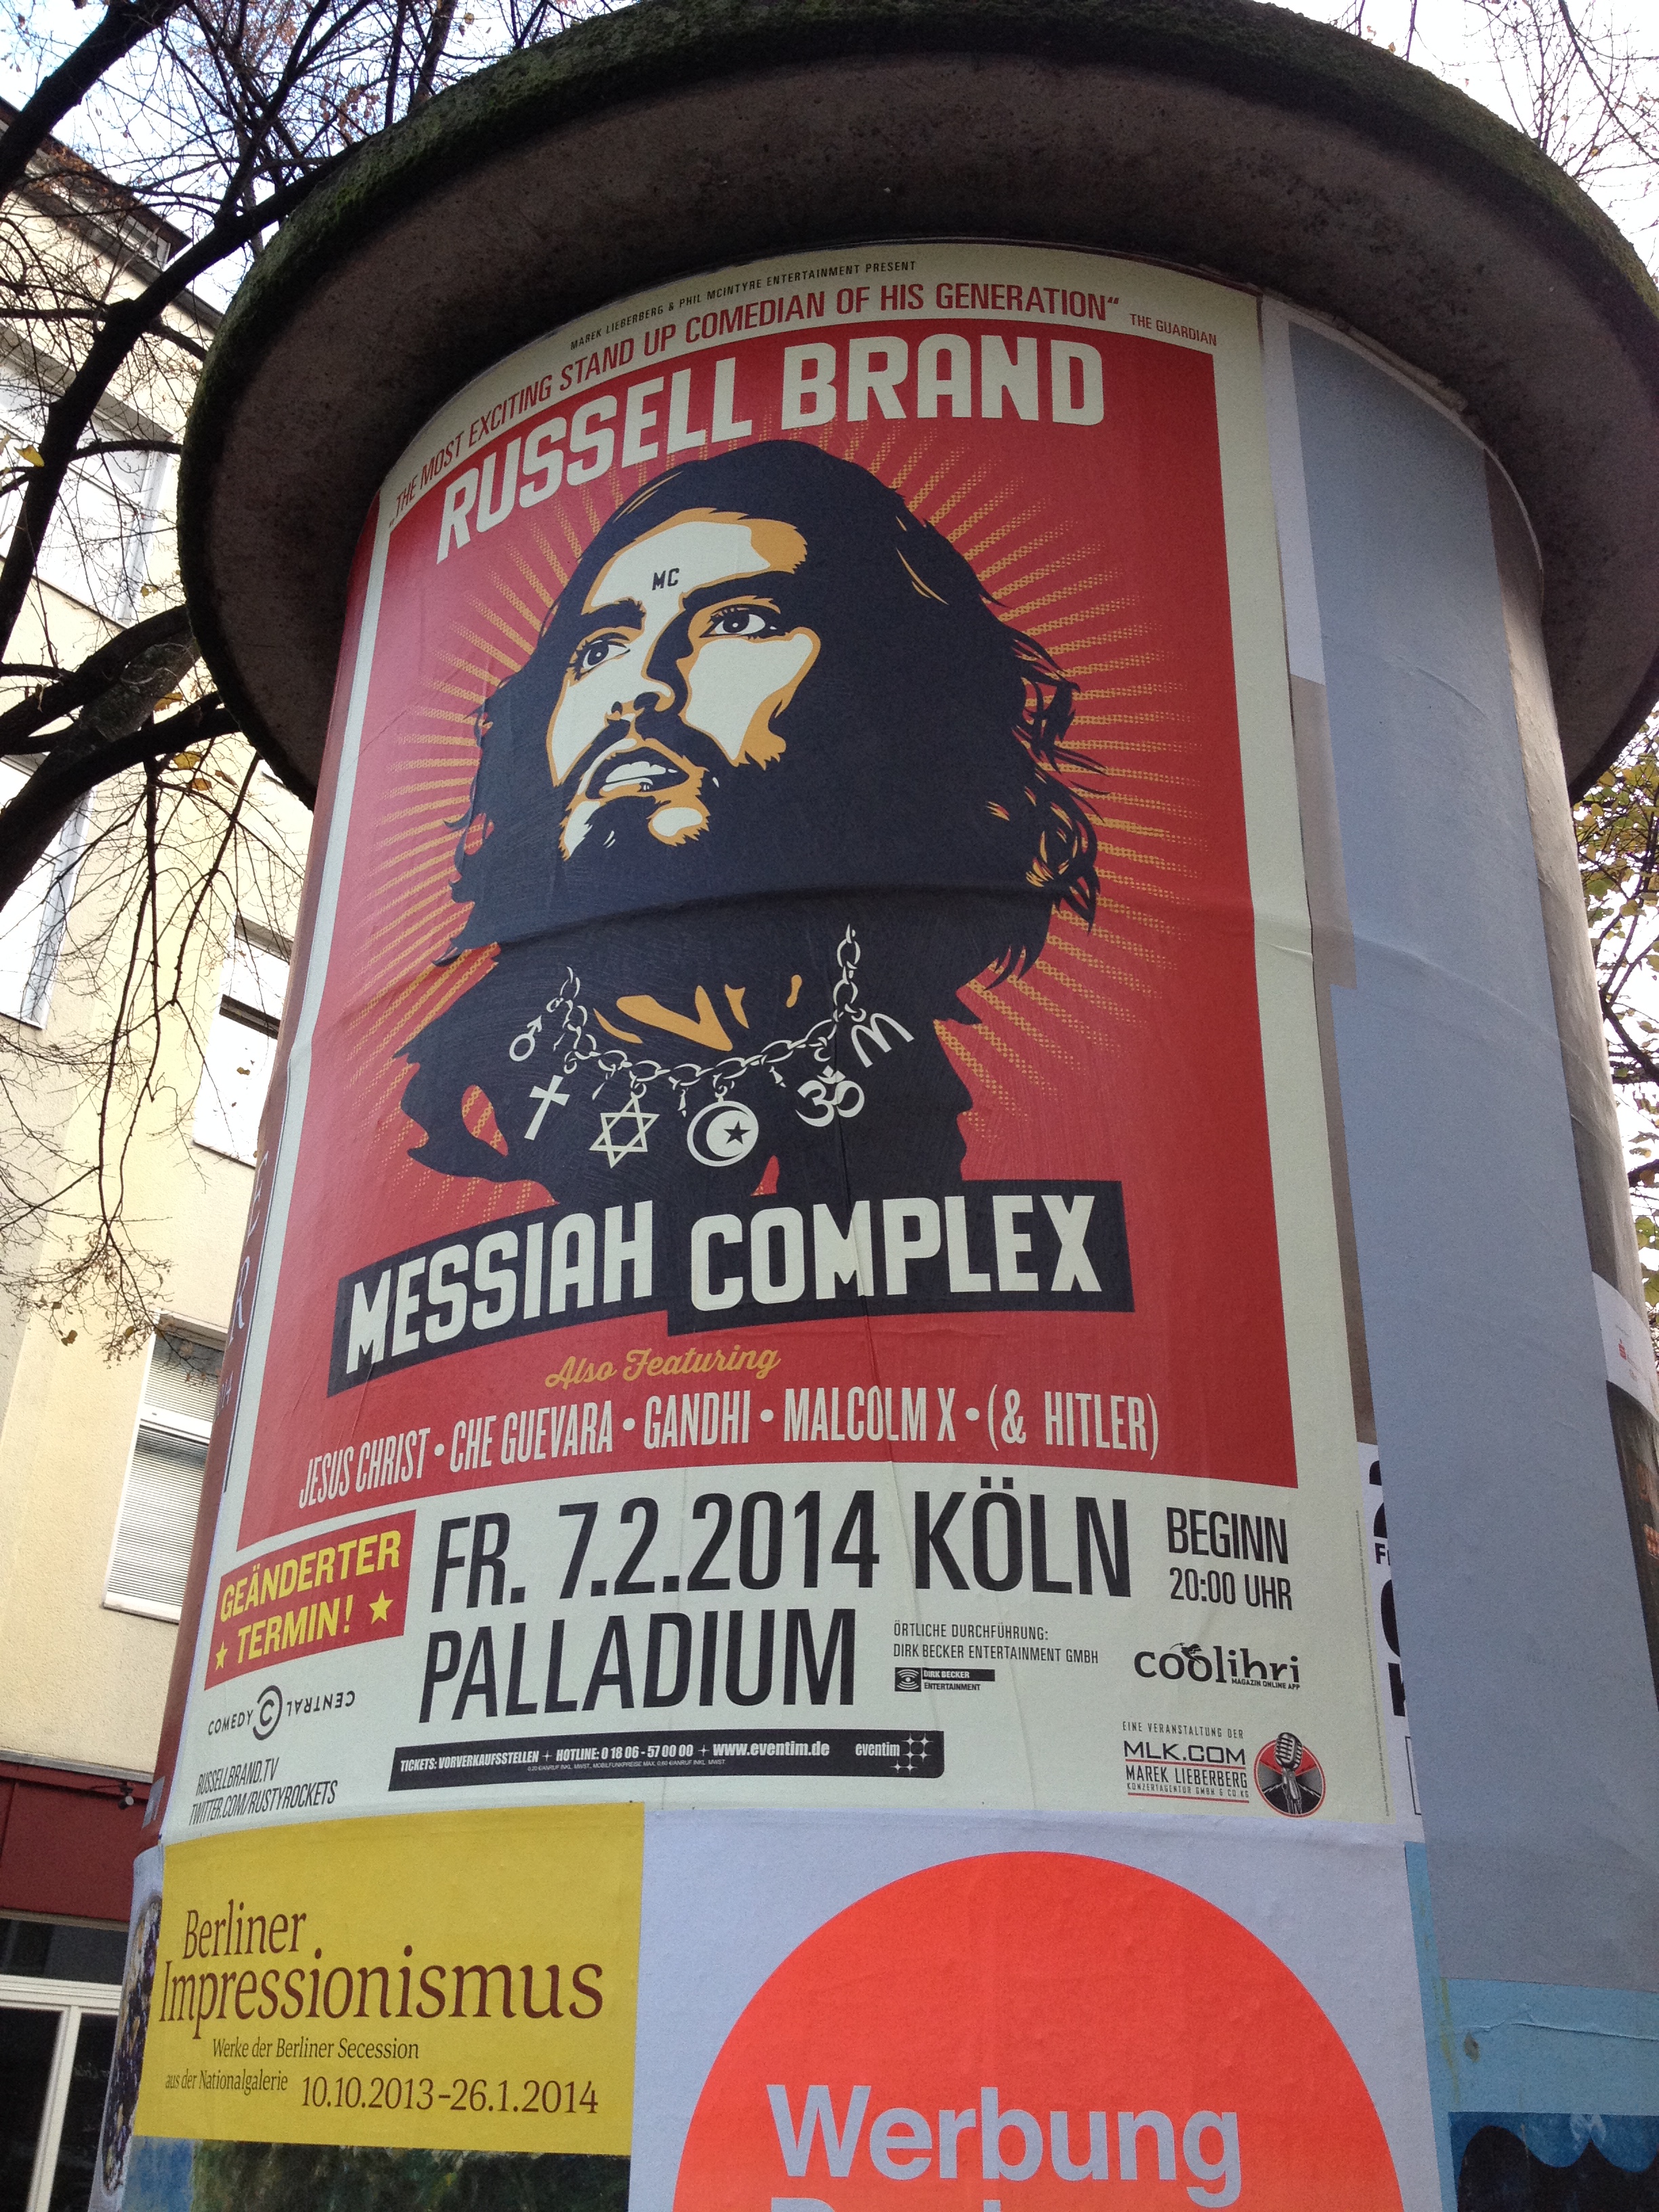 Messiah Complex